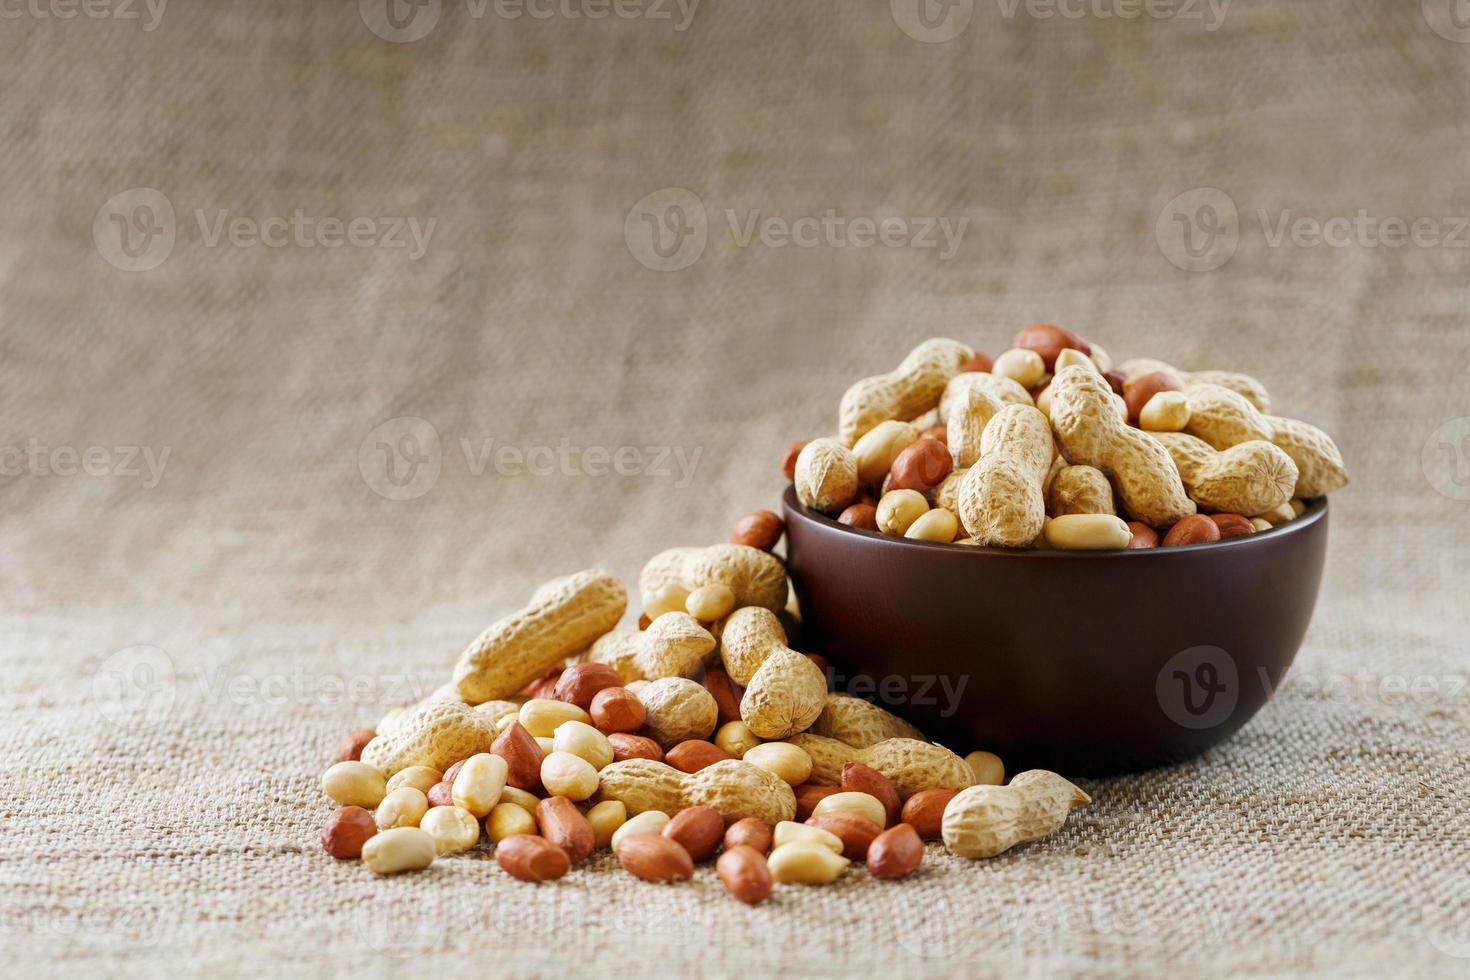 amendoins com casca e close-up descascado em xícaras. amendoins torrados com casca e descascados contra um pano marrom. foto